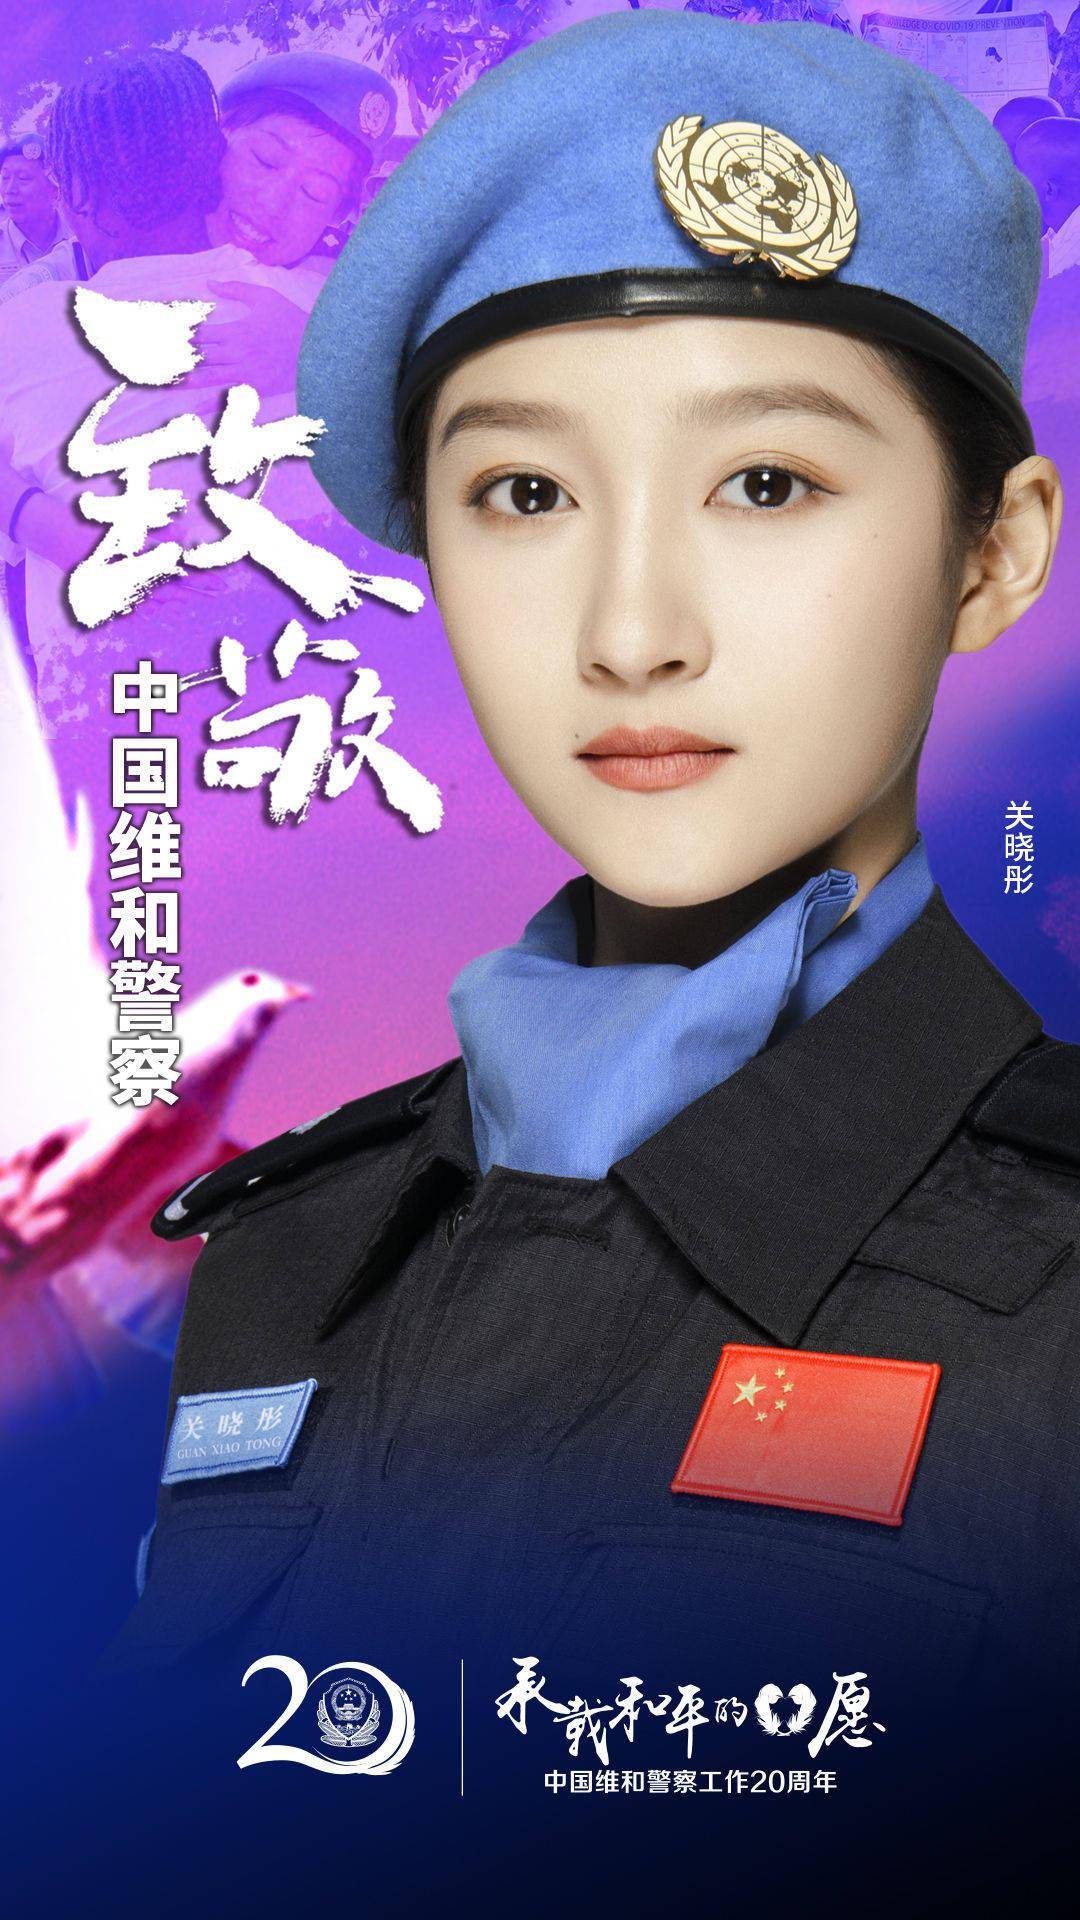 中国维和警察20周年和关晓彤邓伦一起致敬中国蓝盔